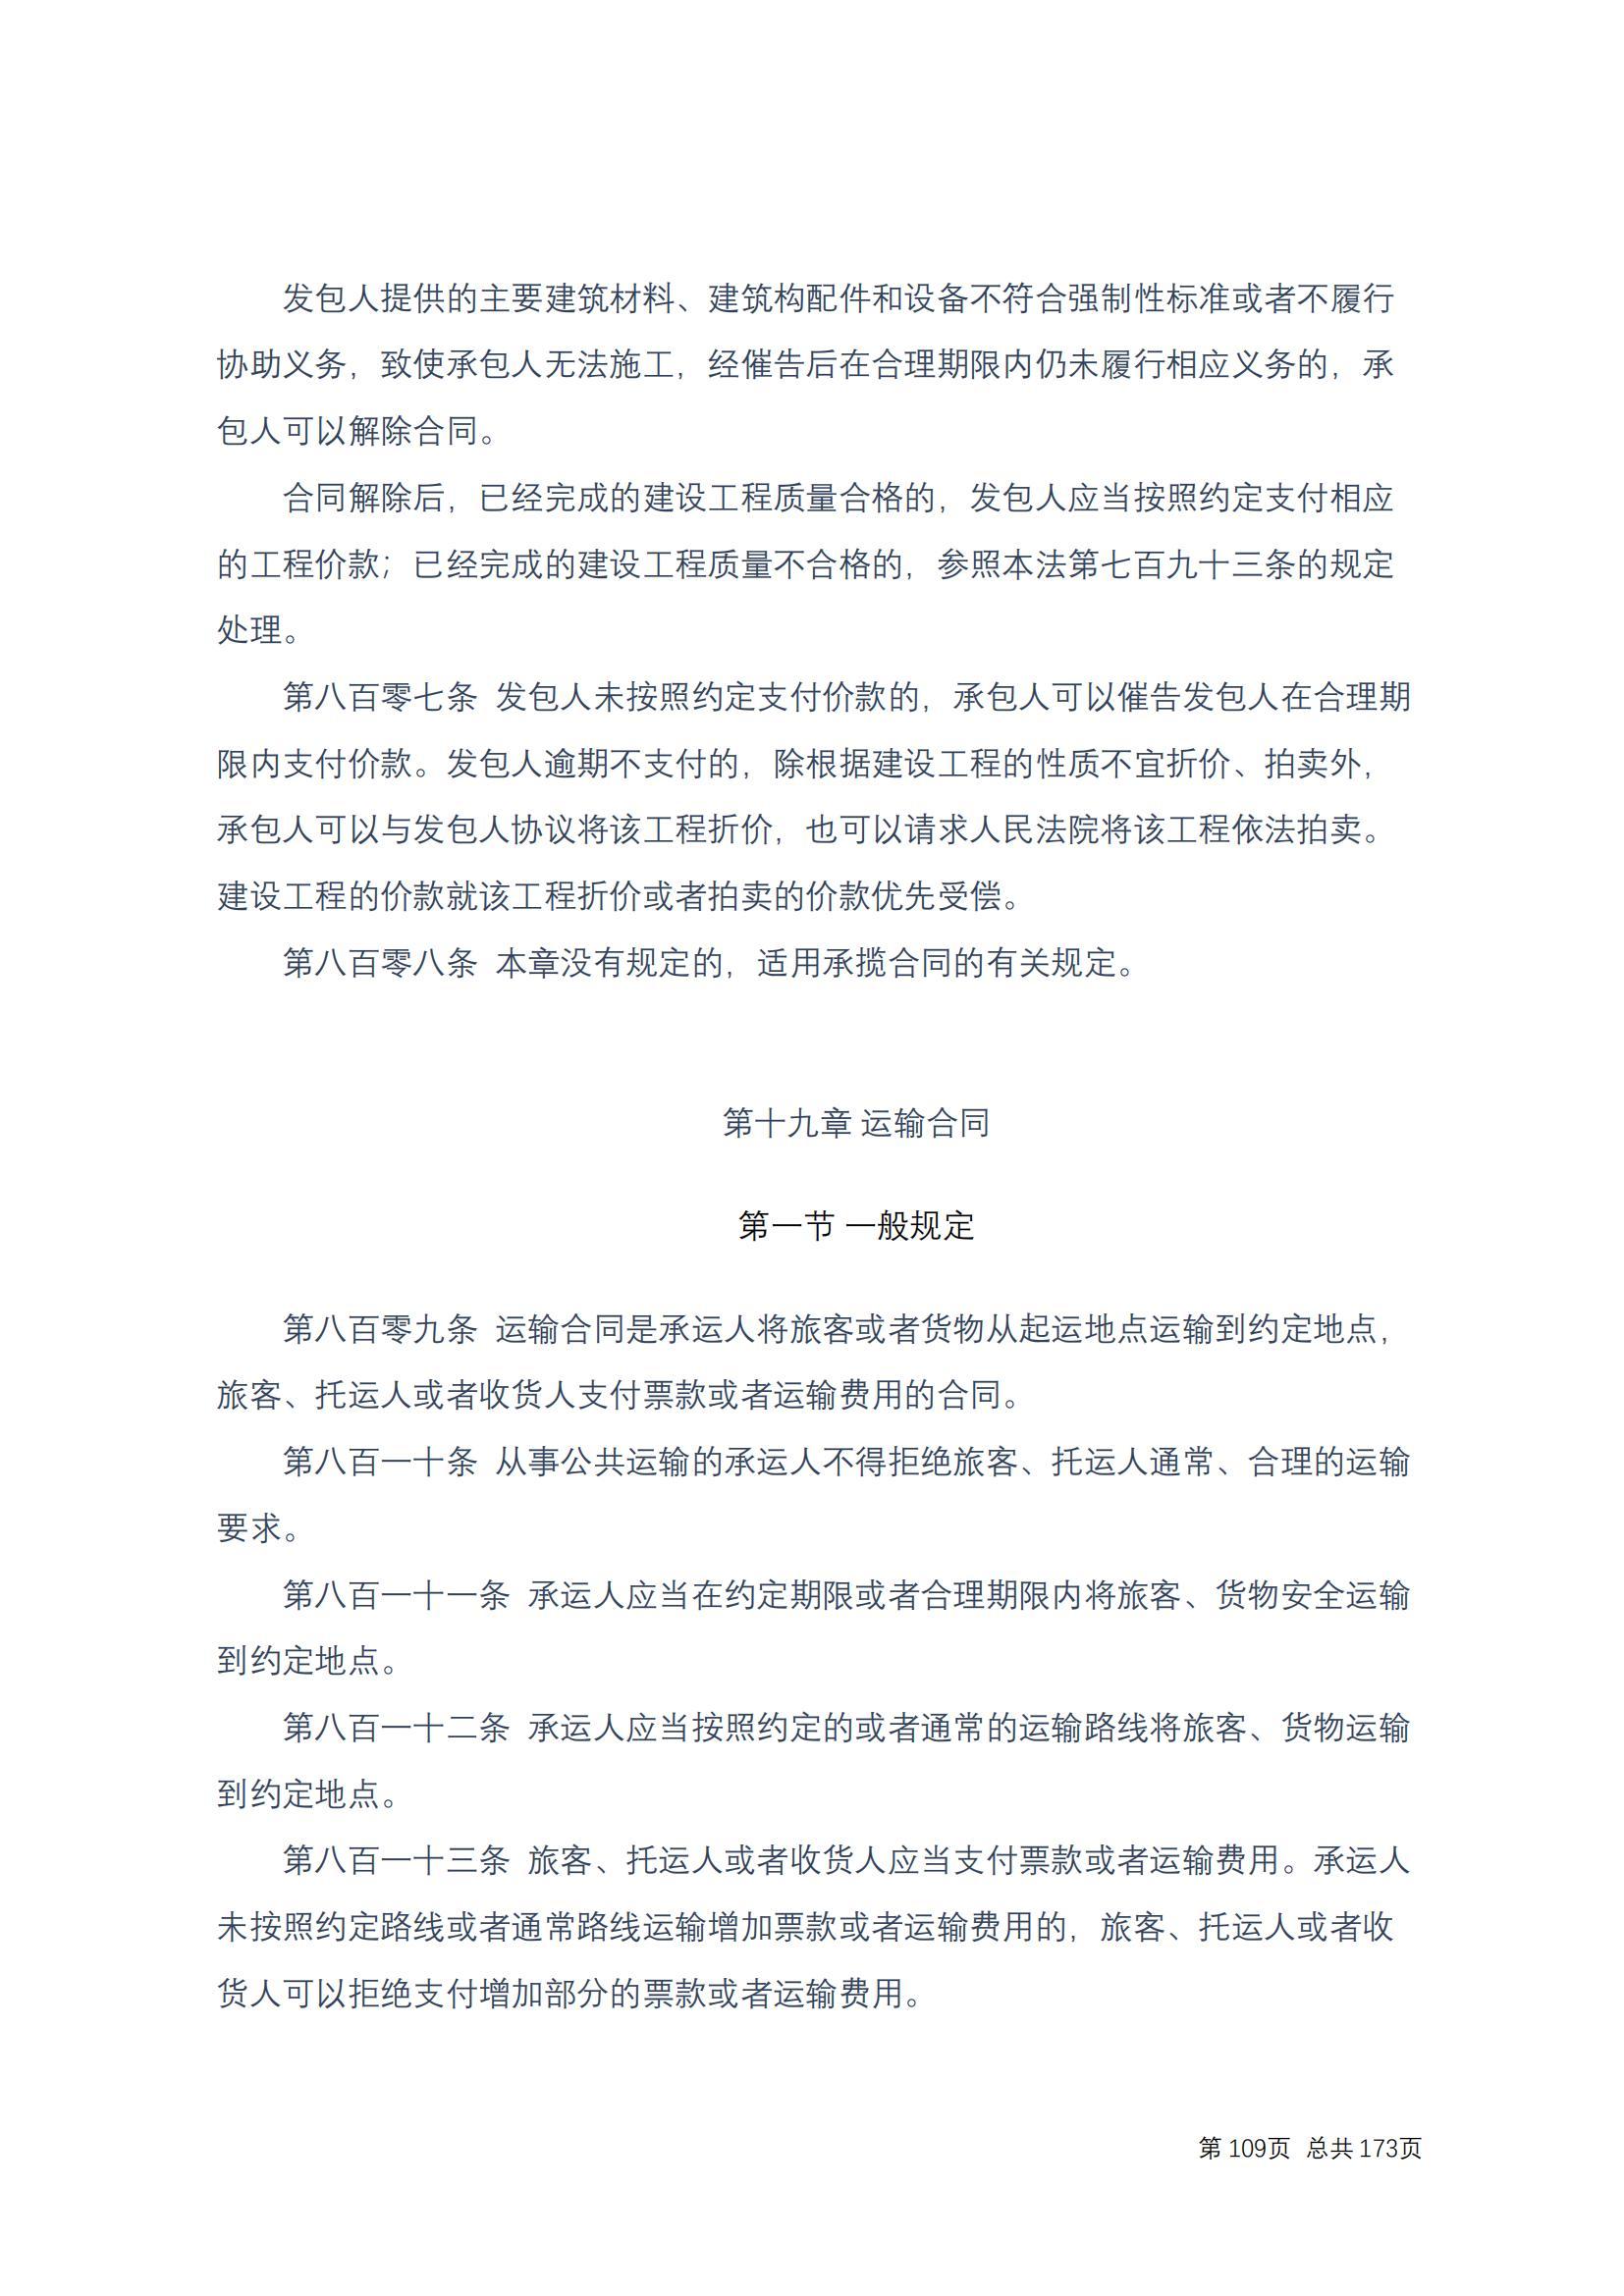 中华人民共和国民法典 修改过_108